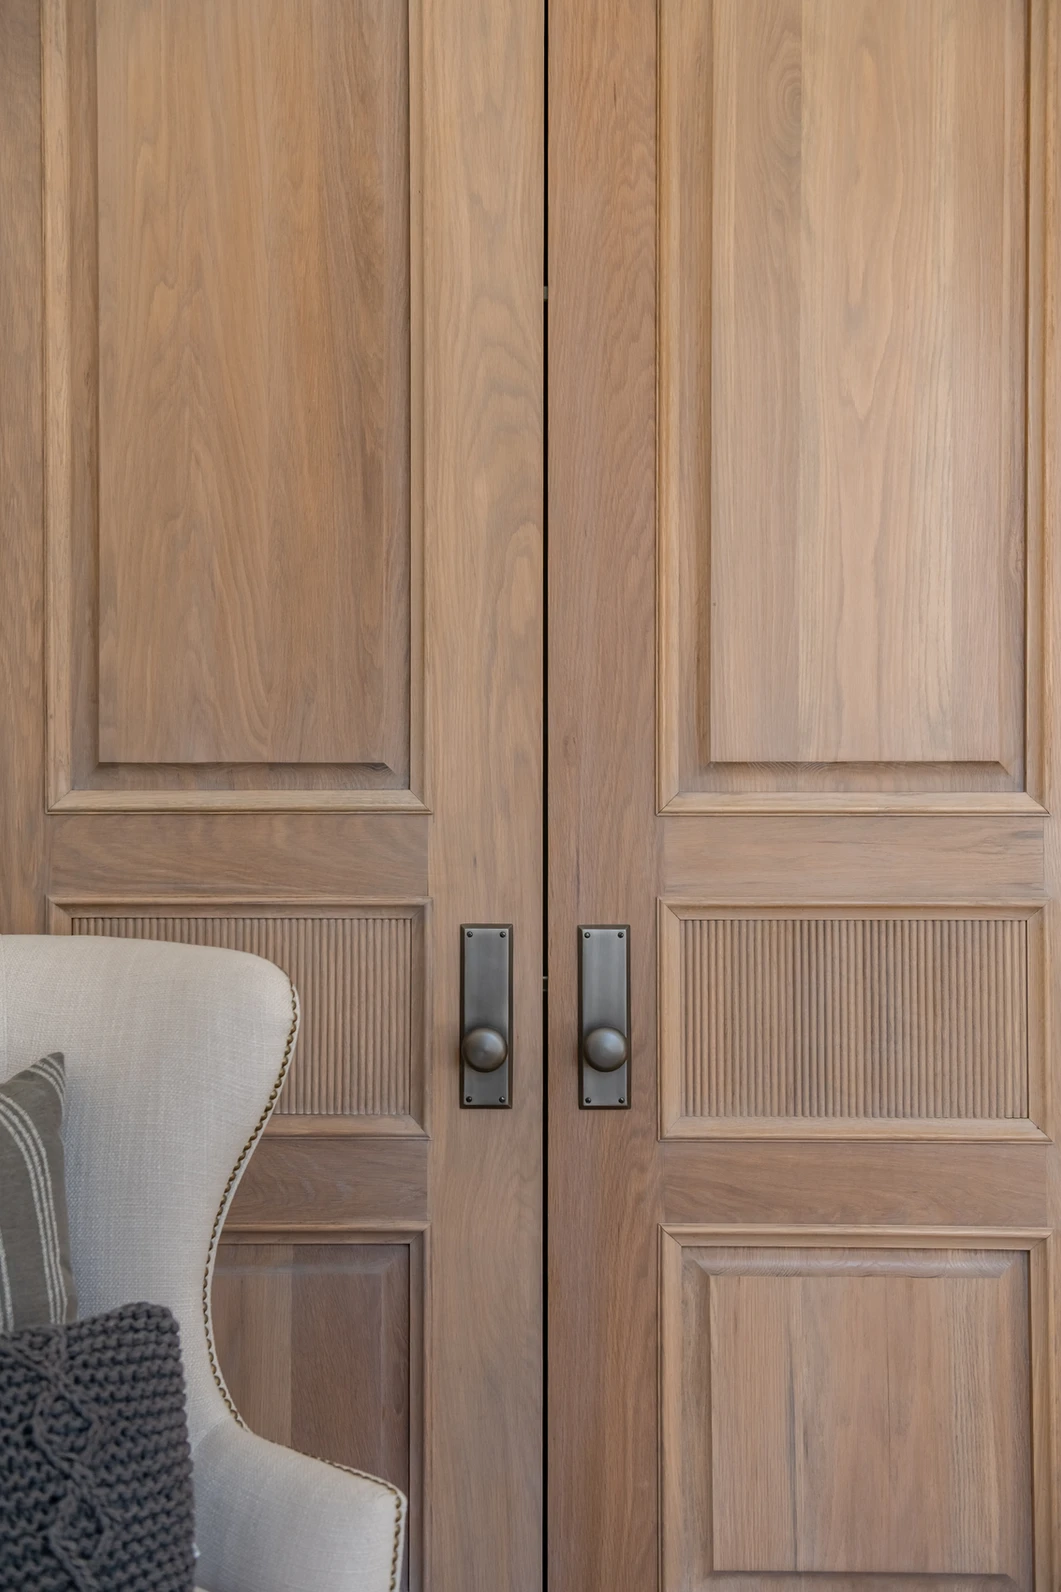 Welcome Guests in Style: Creative Panel Door Designs